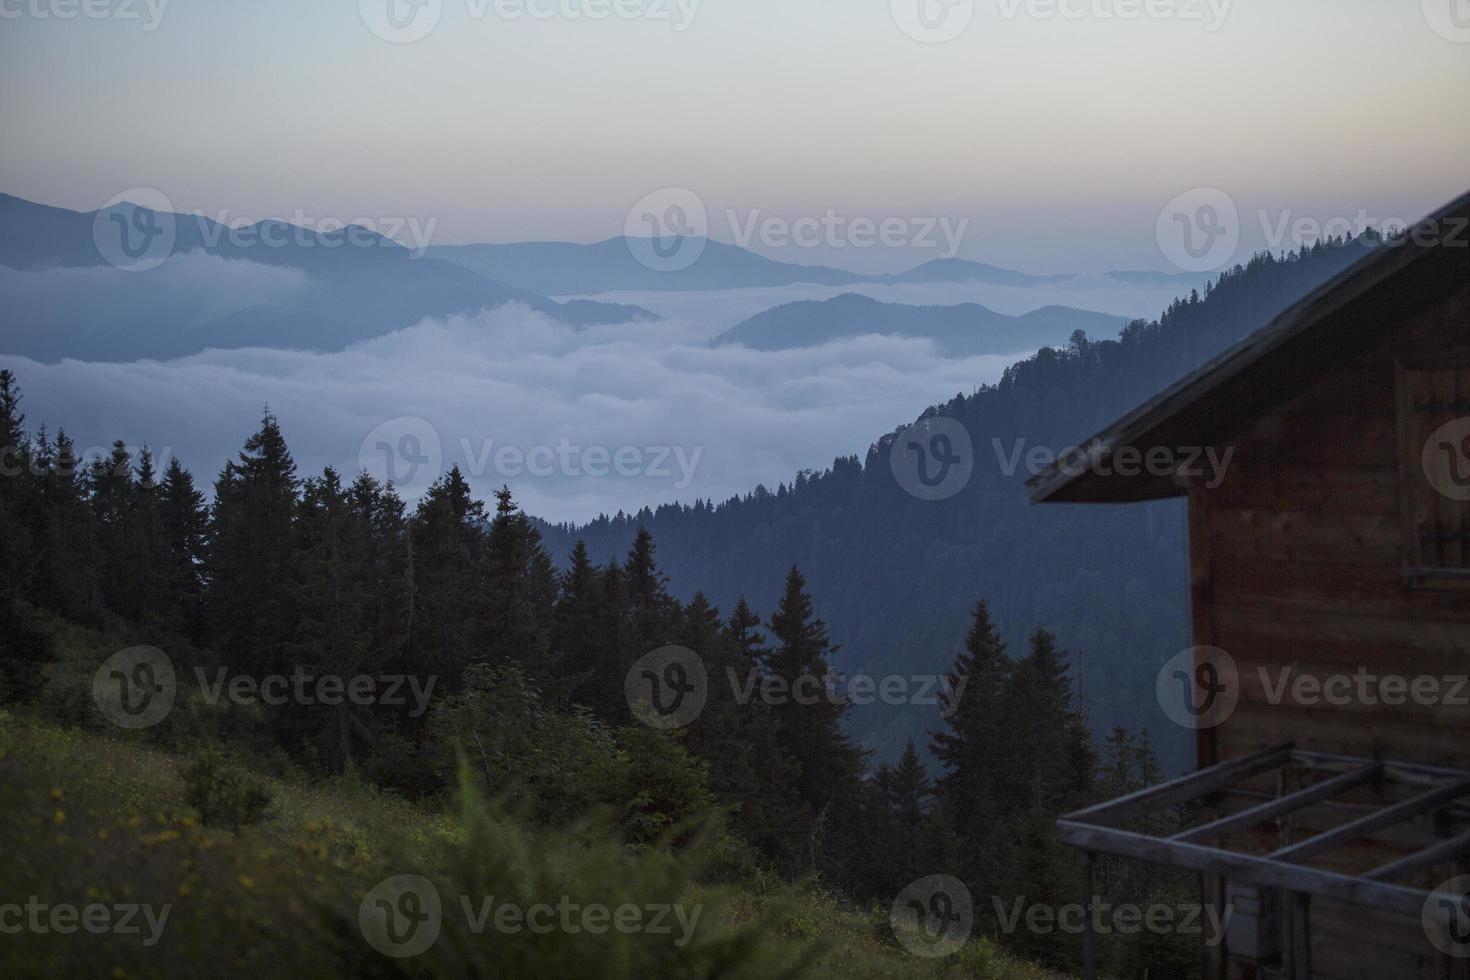 parmi le brouillard vue sur la montagne, coucher de soleil, rize, turquie photo